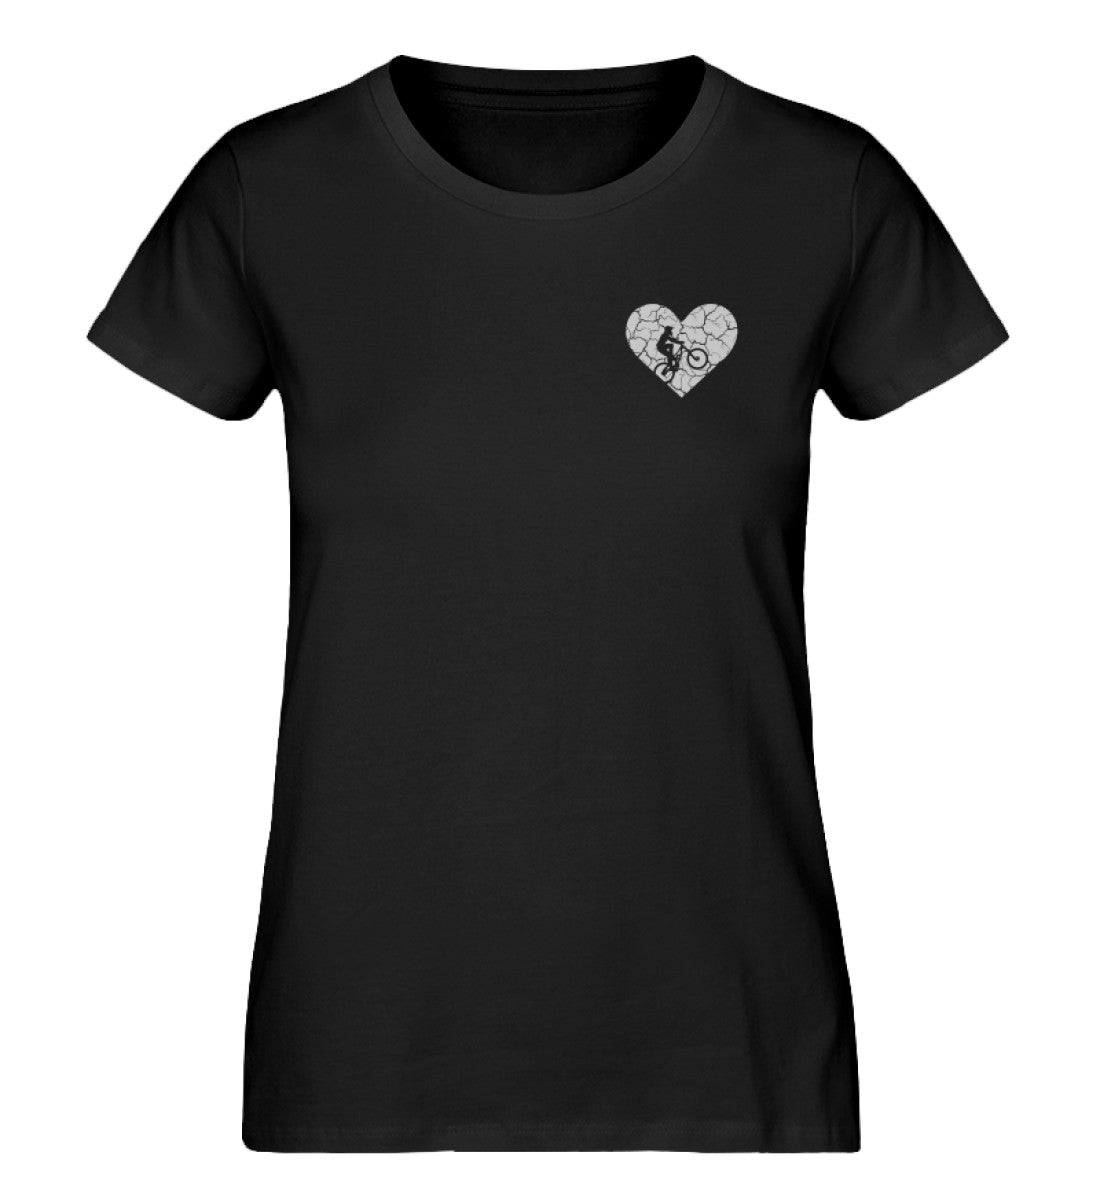 Herz und Fahrrad - Damen Organic T-Shirt fahrrad Schwarz